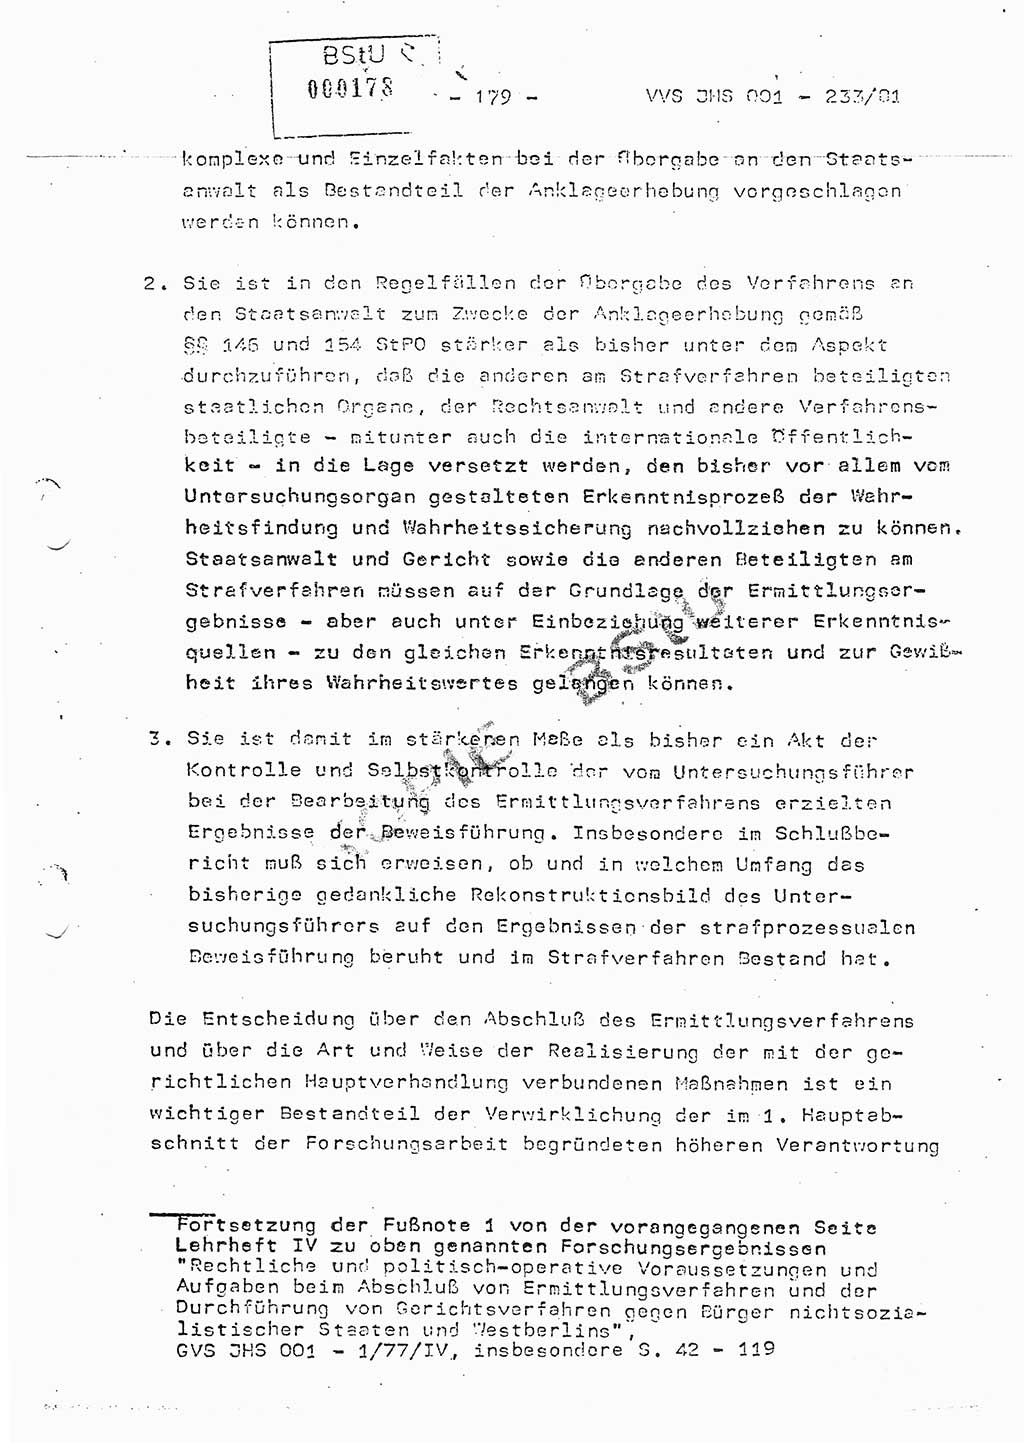 Dissertation Oberstleutnant Horst Zank (JHS), Oberstleutnant Dr. Karl-Heinz Knoblauch (JHS), Oberstleutnant Gustav-Adolf Kowalewski (HA Ⅸ), Oberstleutnant Wolfgang Plötner (HA Ⅸ), Ministerium für Staatssicherheit (MfS) [Deutsche Demokratische Republik (DDR)], Juristische Hochschule (JHS), Vertrauliche Verschlußsache (VVS) o001-233/81, Potsdam 1981, Blatt 179 (Diss. MfS DDR JHS VVS o001-233/81 1981, Bl. 179)